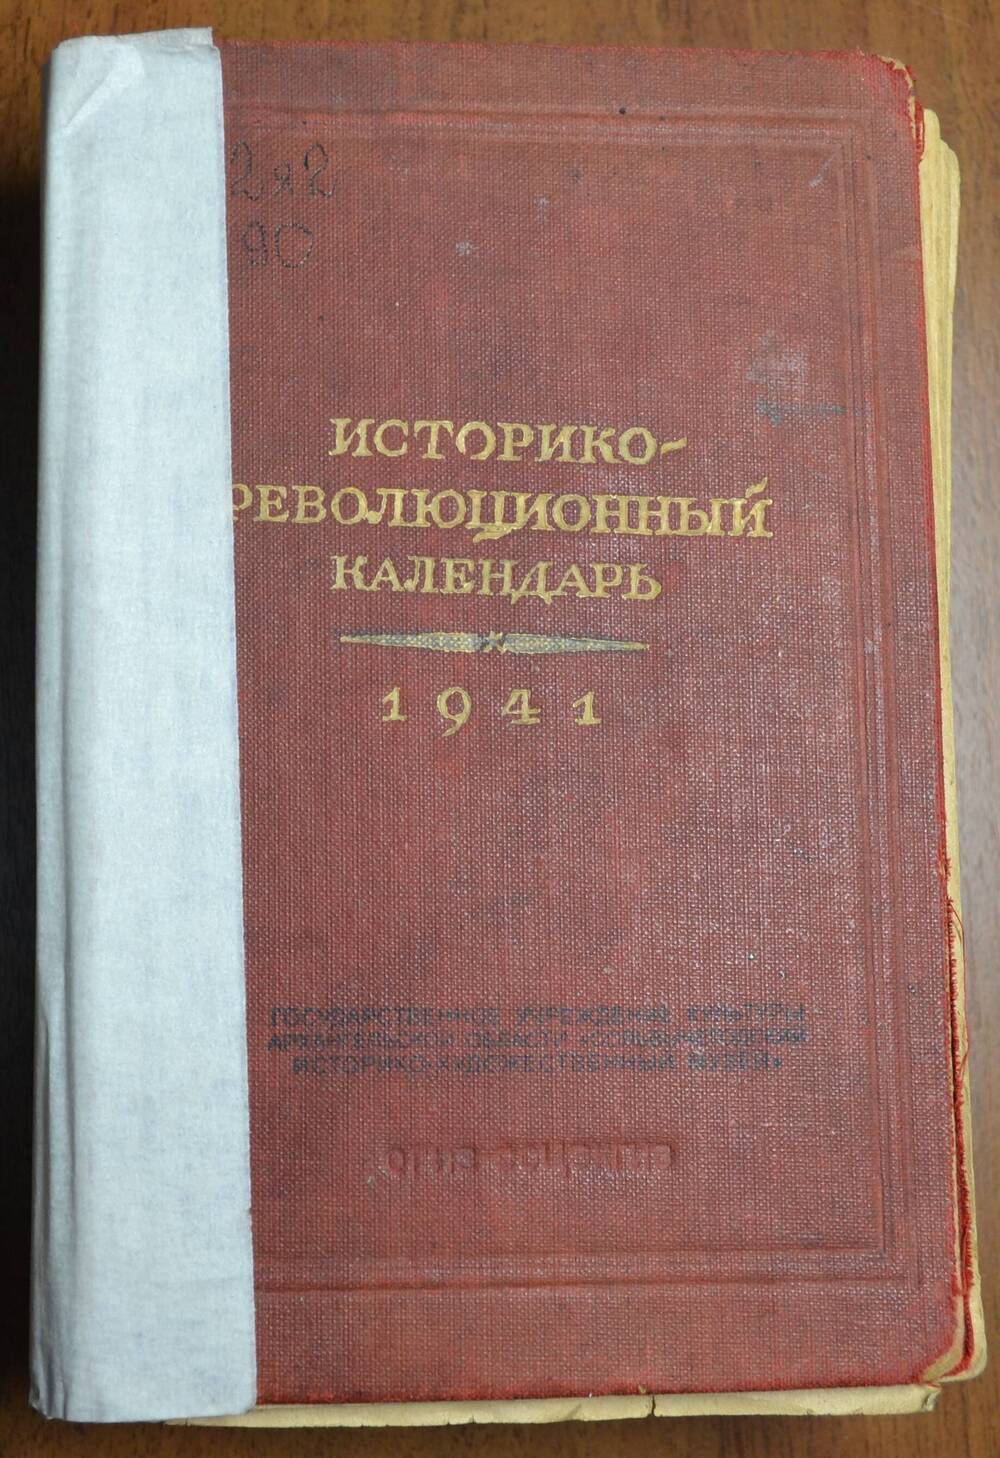 Книга. Историко-революционный календарь. 1941 г.